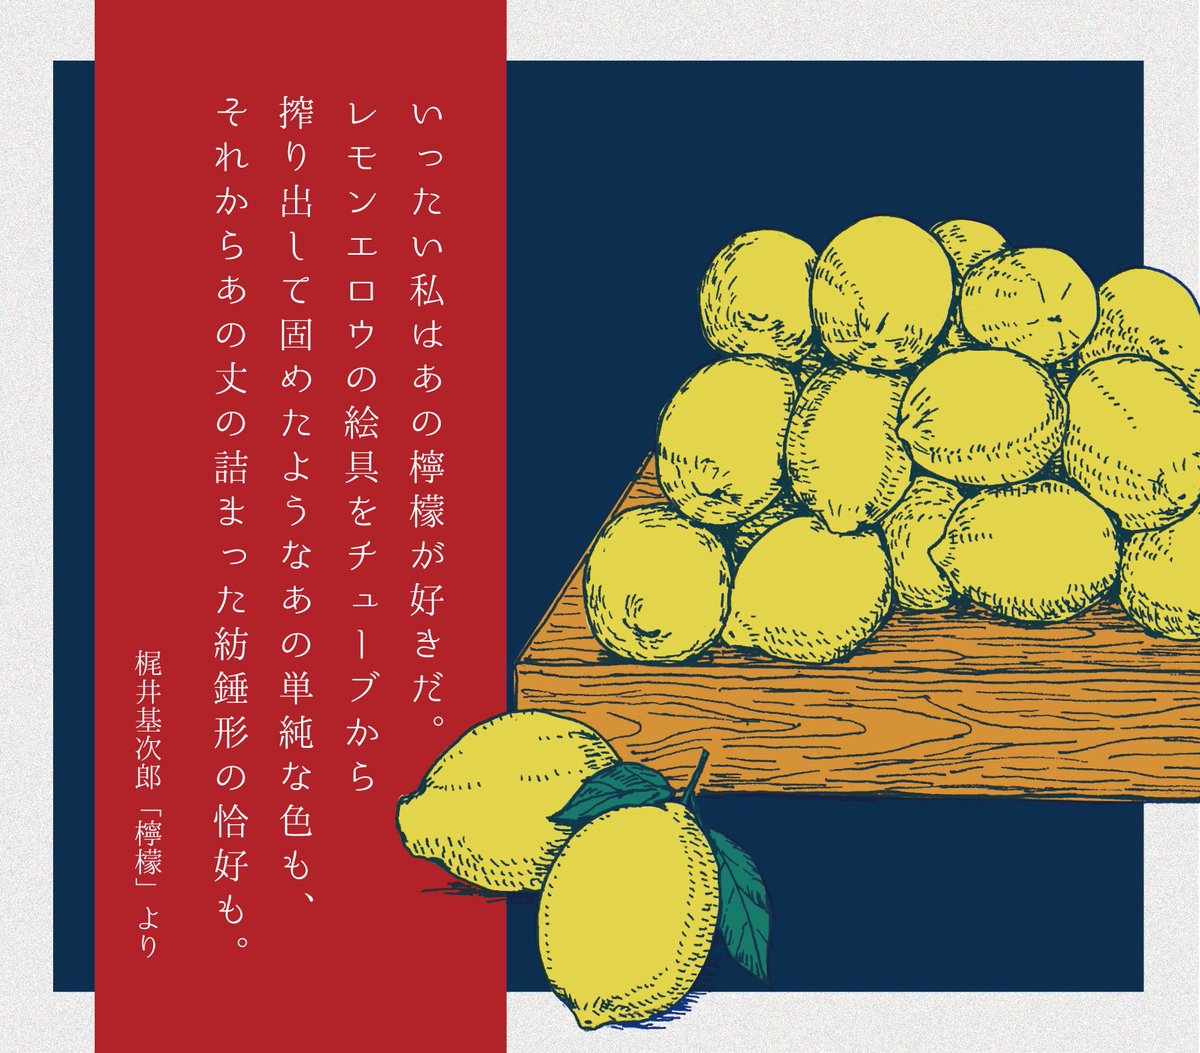 過去絵。梶井基次郎「檸檬」より。たまに、青空文庫の作品に絵を描く試みをやっていて、そのシリーズ。
#イラスト
#illustration 